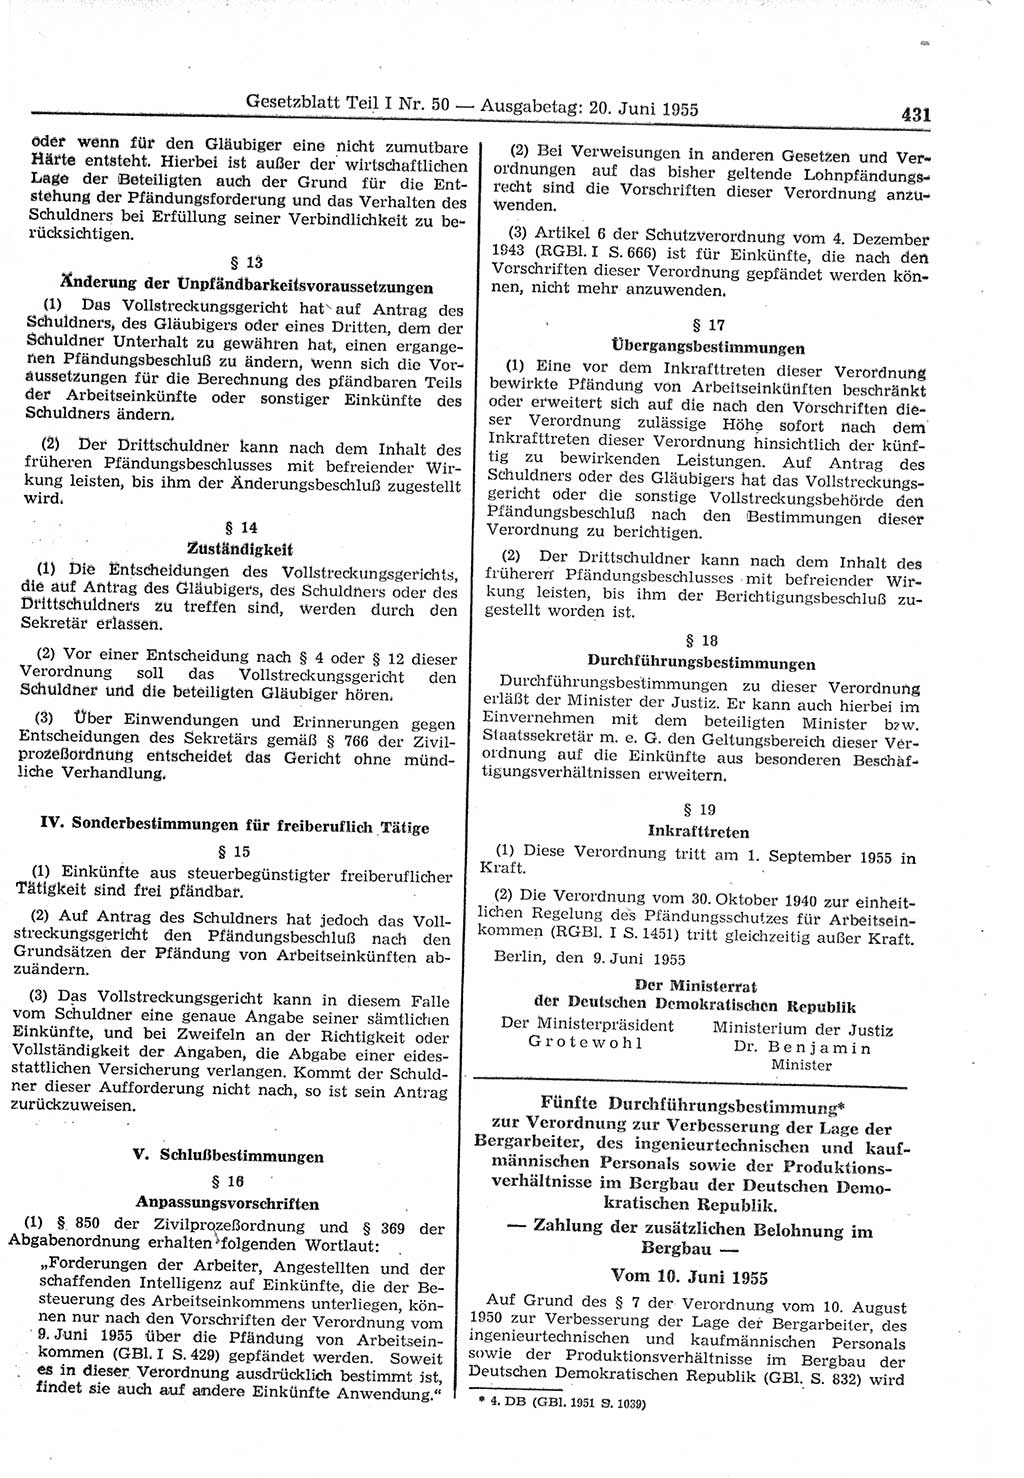 Gesetzblatt (GBl.) der Deutschen Demokratischen Republik (DDR) Teil Ⅰ 1955, Seite 431 (GBl. DDR Ⅰ 1955, S. 431)